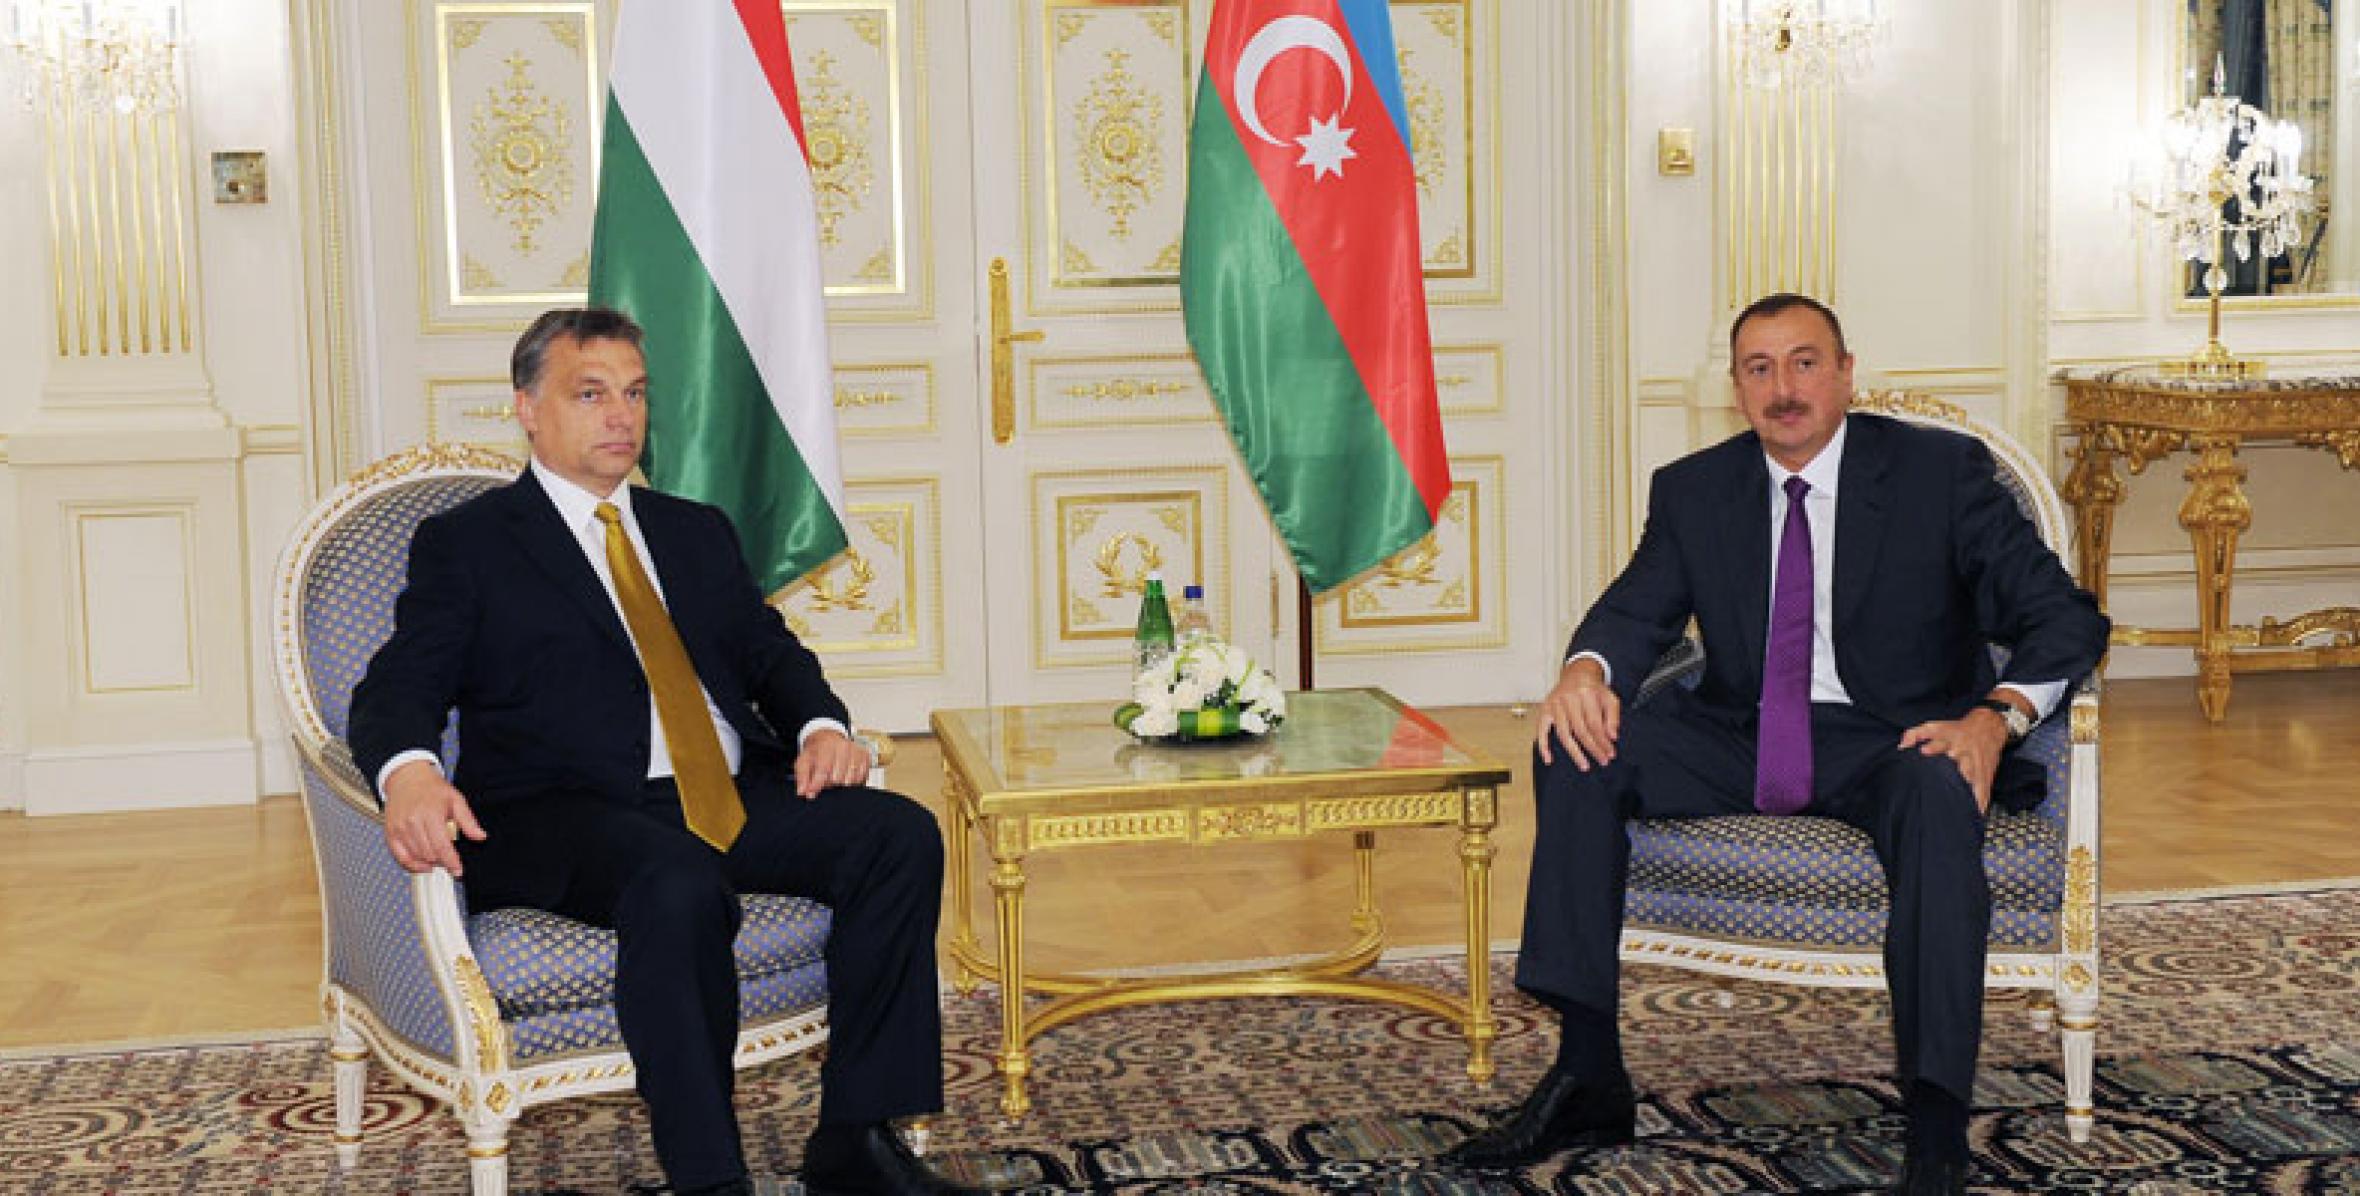 Состоялась встреча Ильхама Алиева с премьер-министром Венгрии Виктором Орбаном